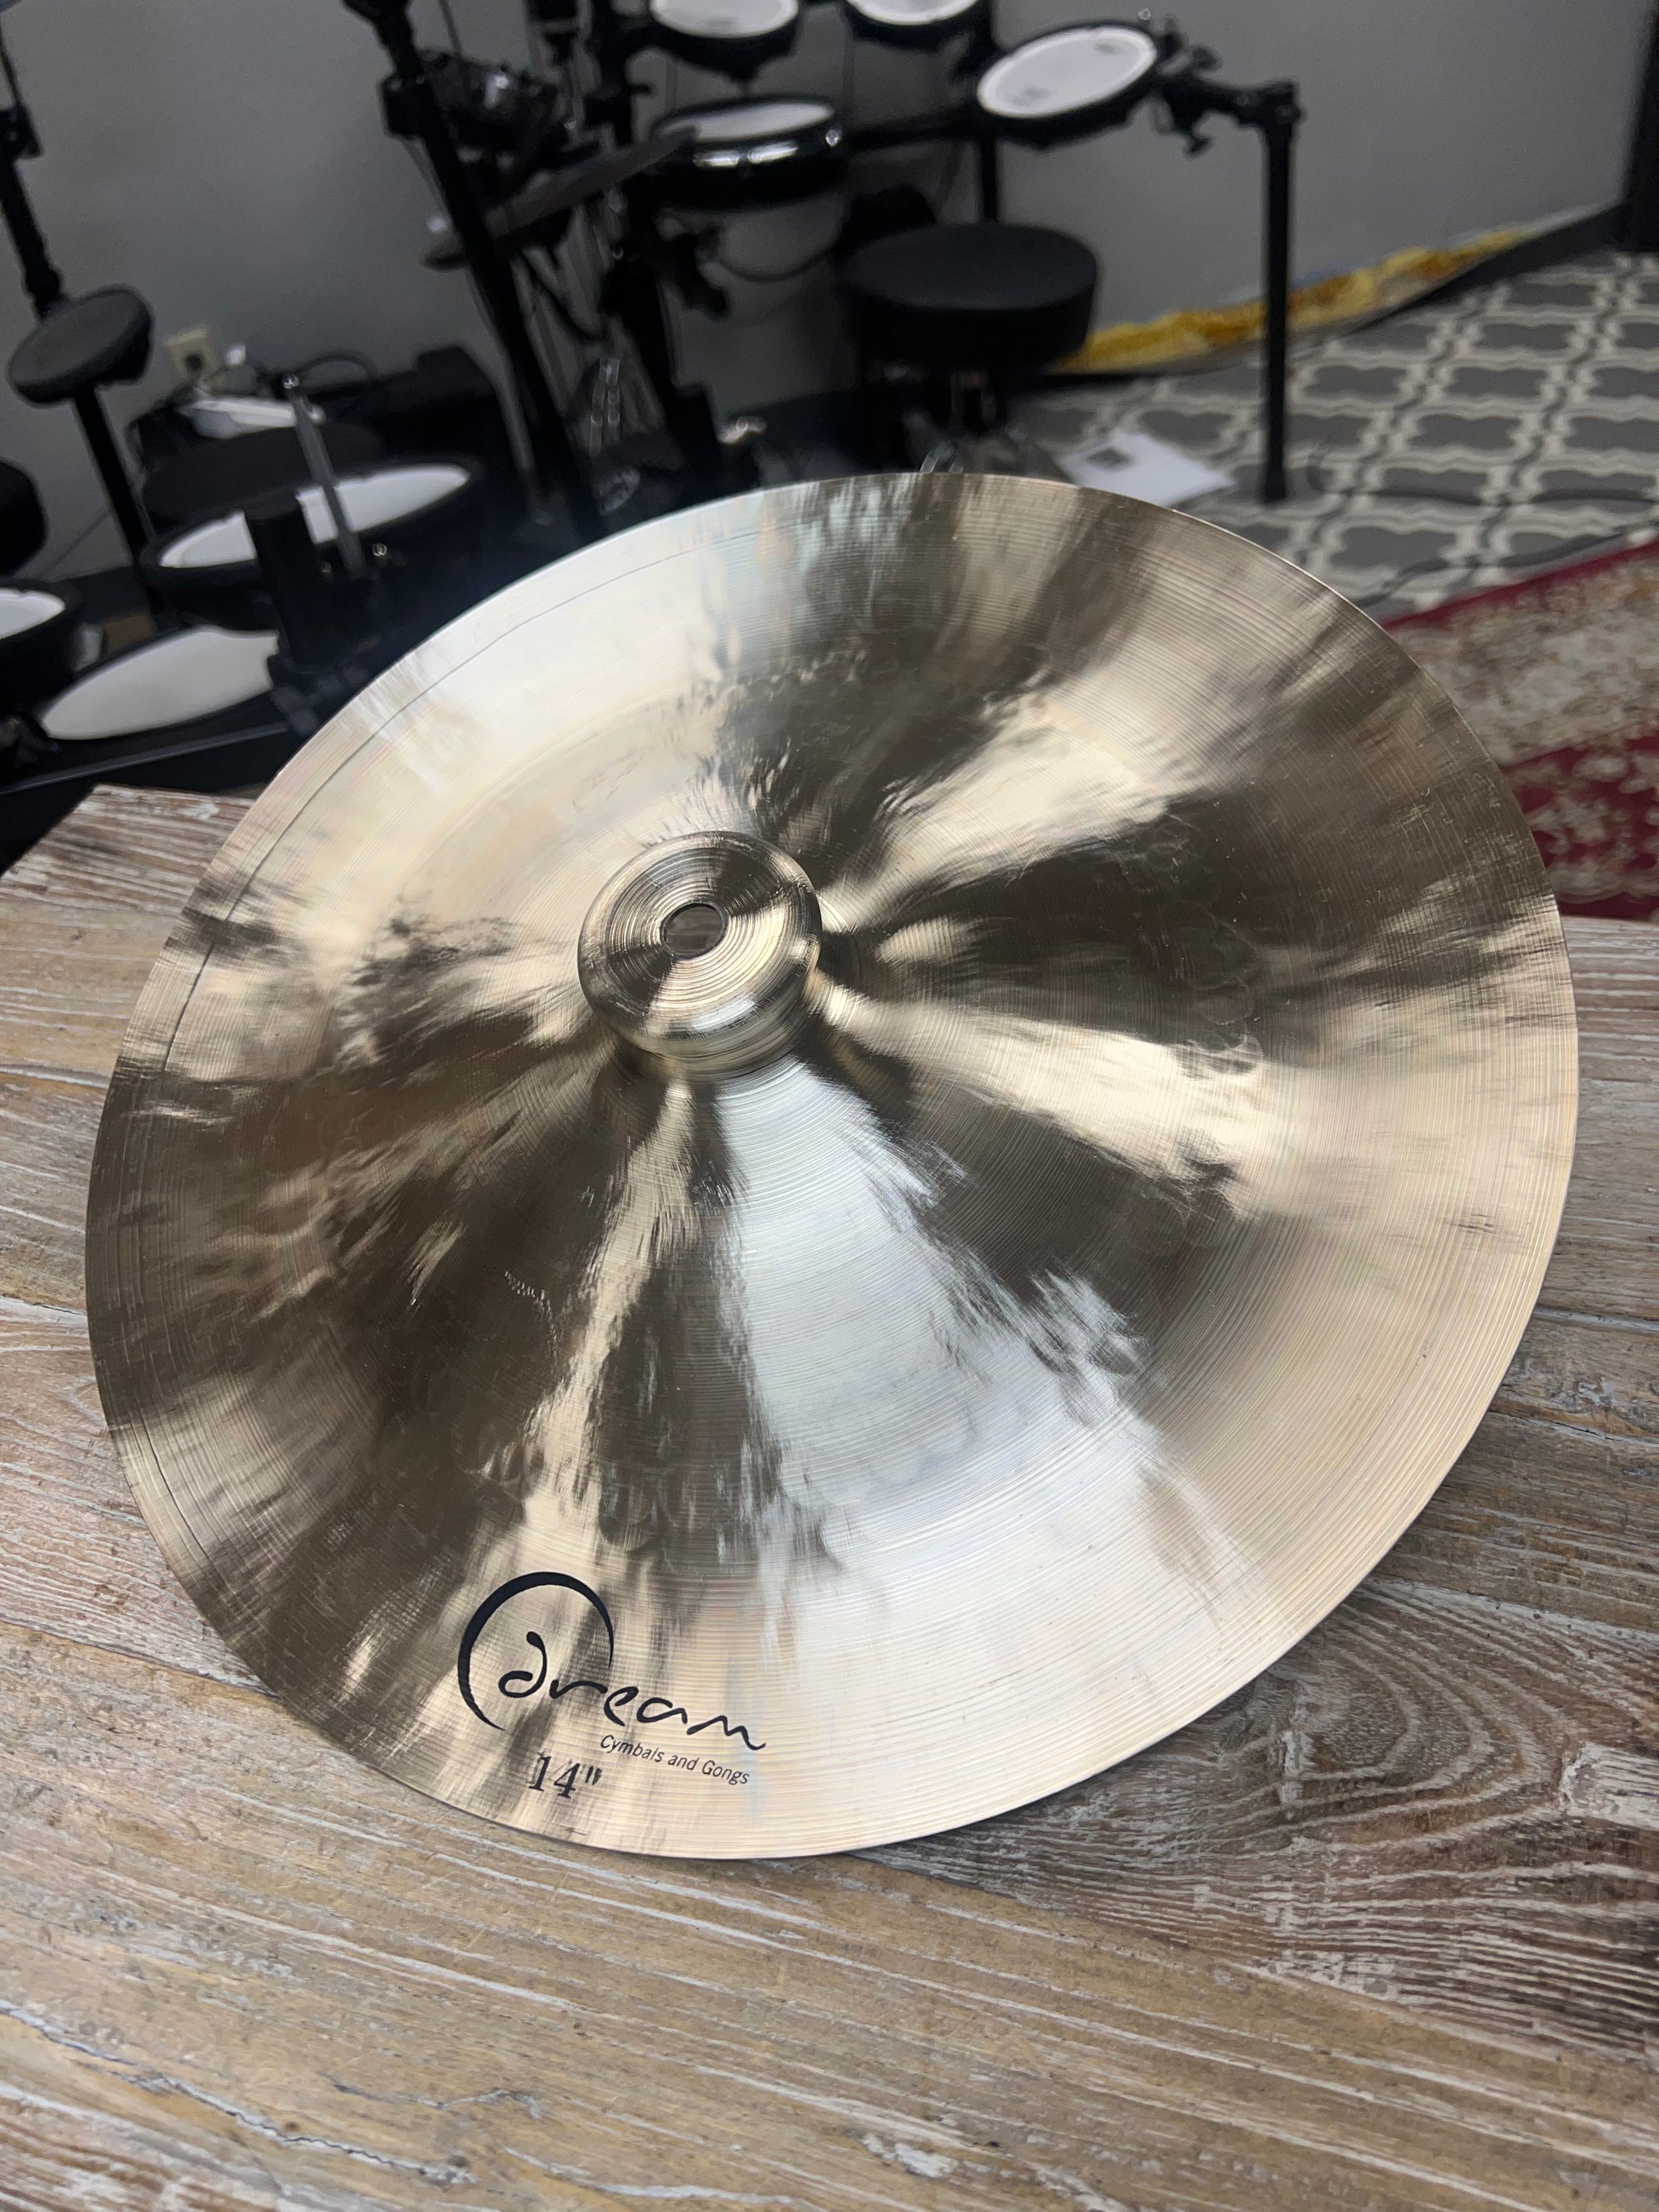 Dream 14” China cymbal